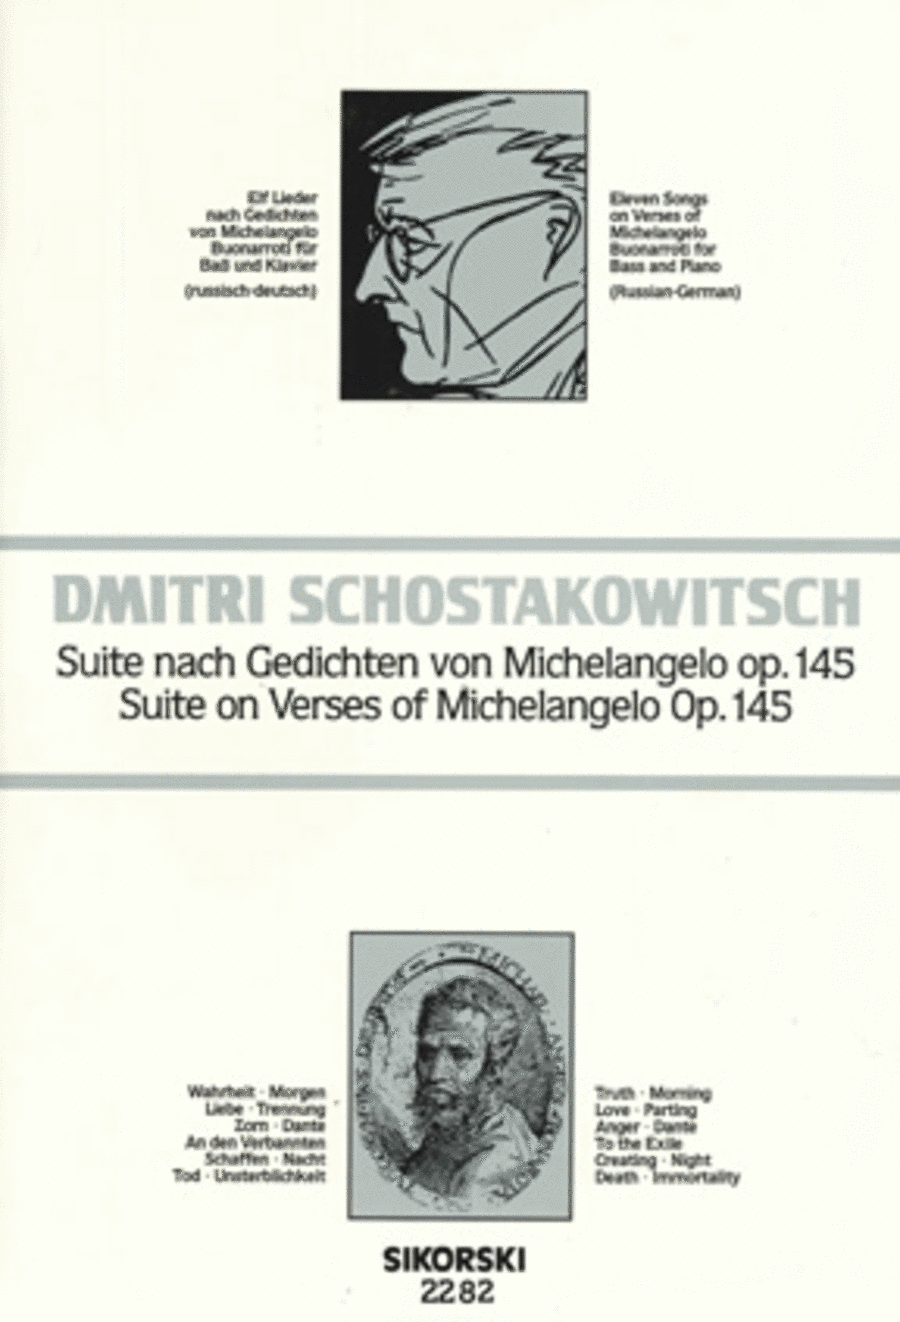 Suite on Verses of Michelangelo Buonarroti, Op.145